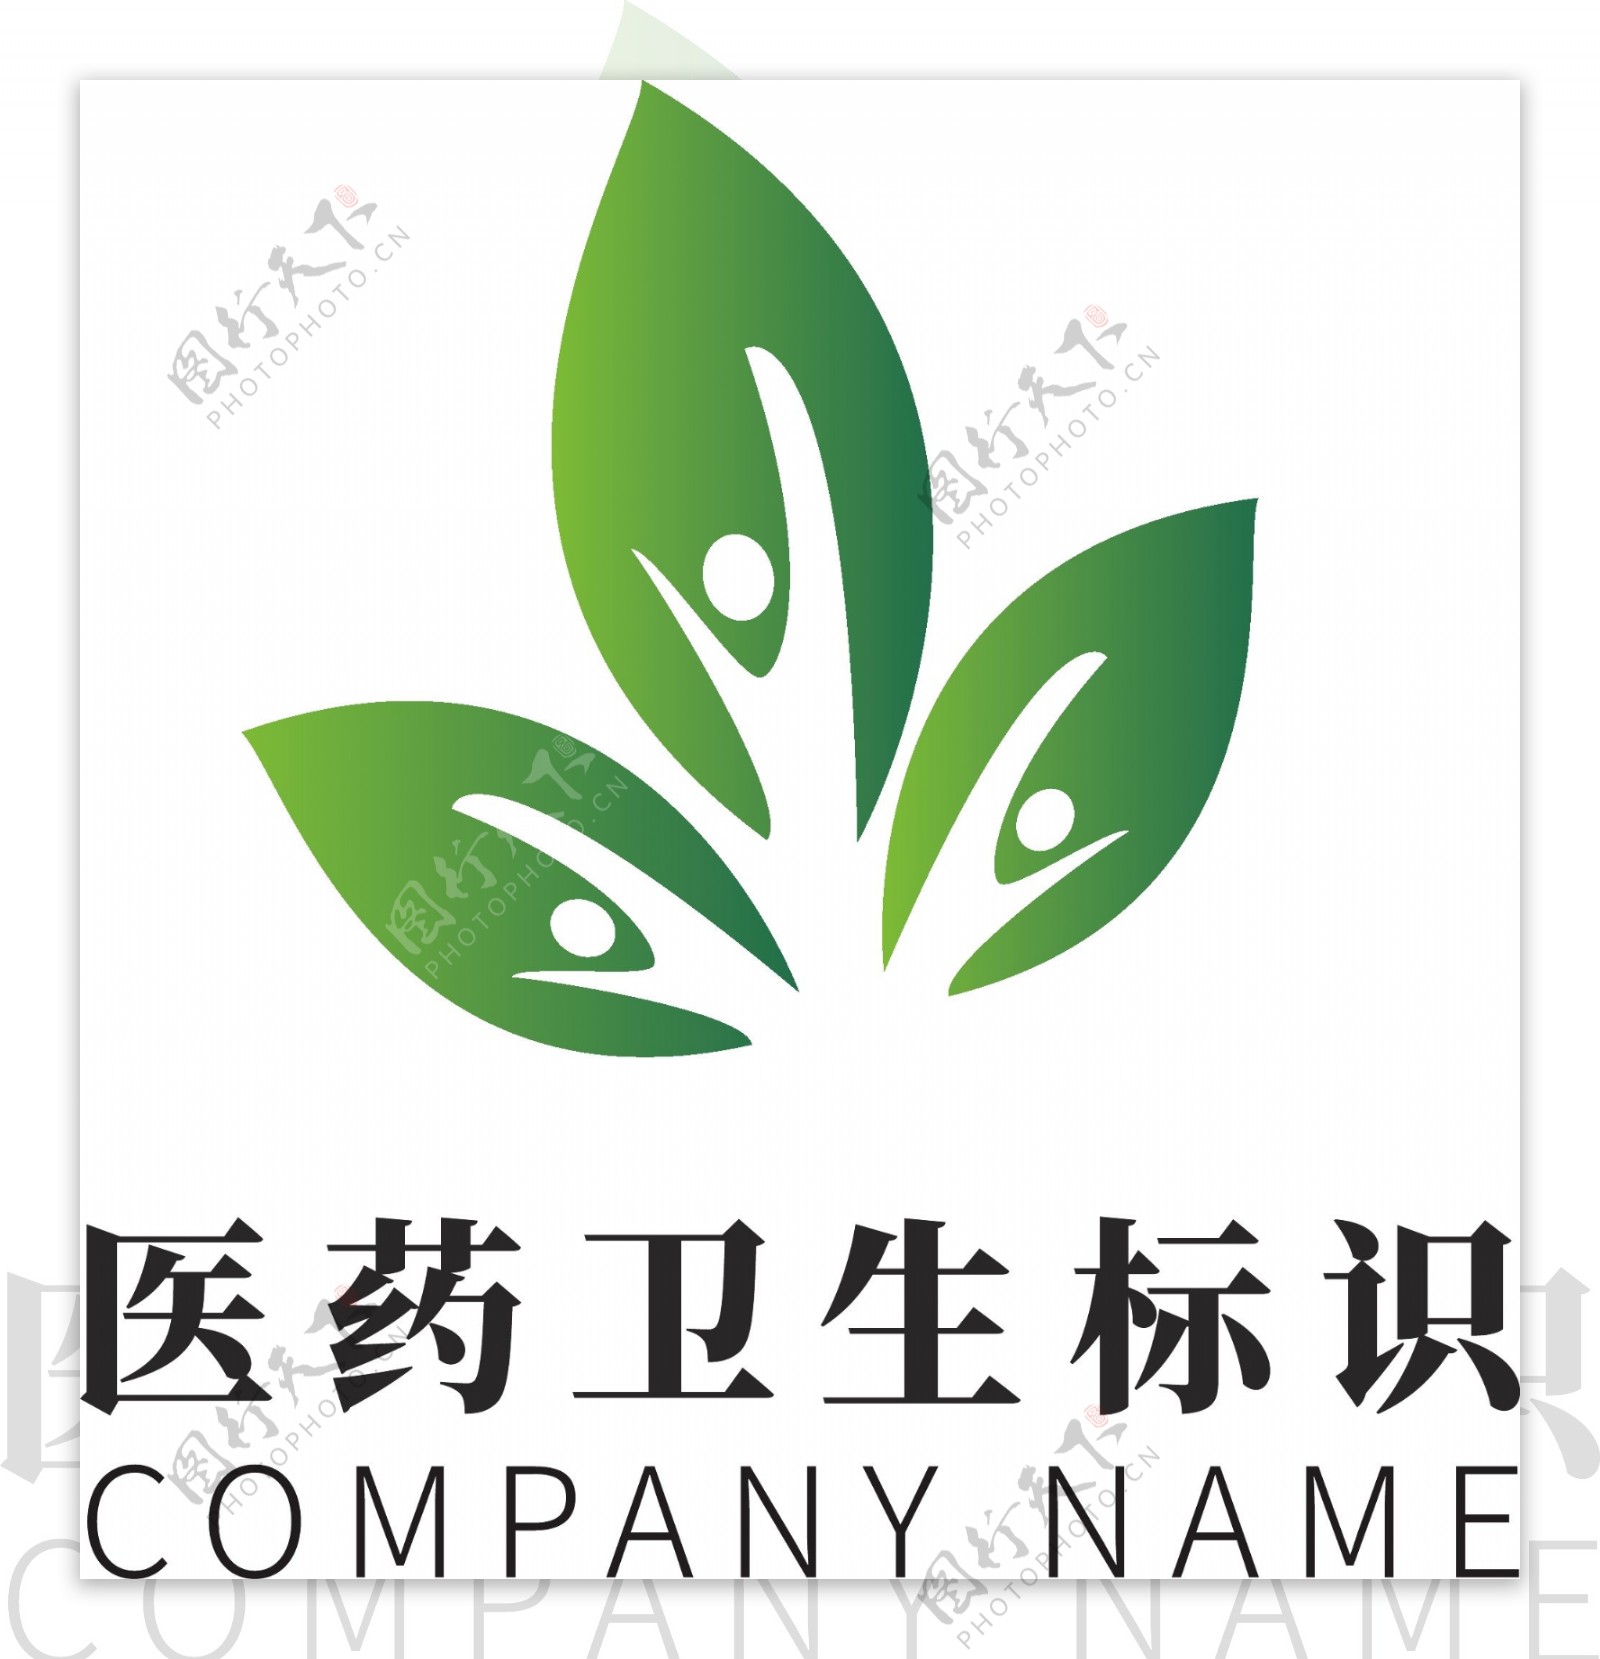 绿色医药卫生环保企业logo标识模板